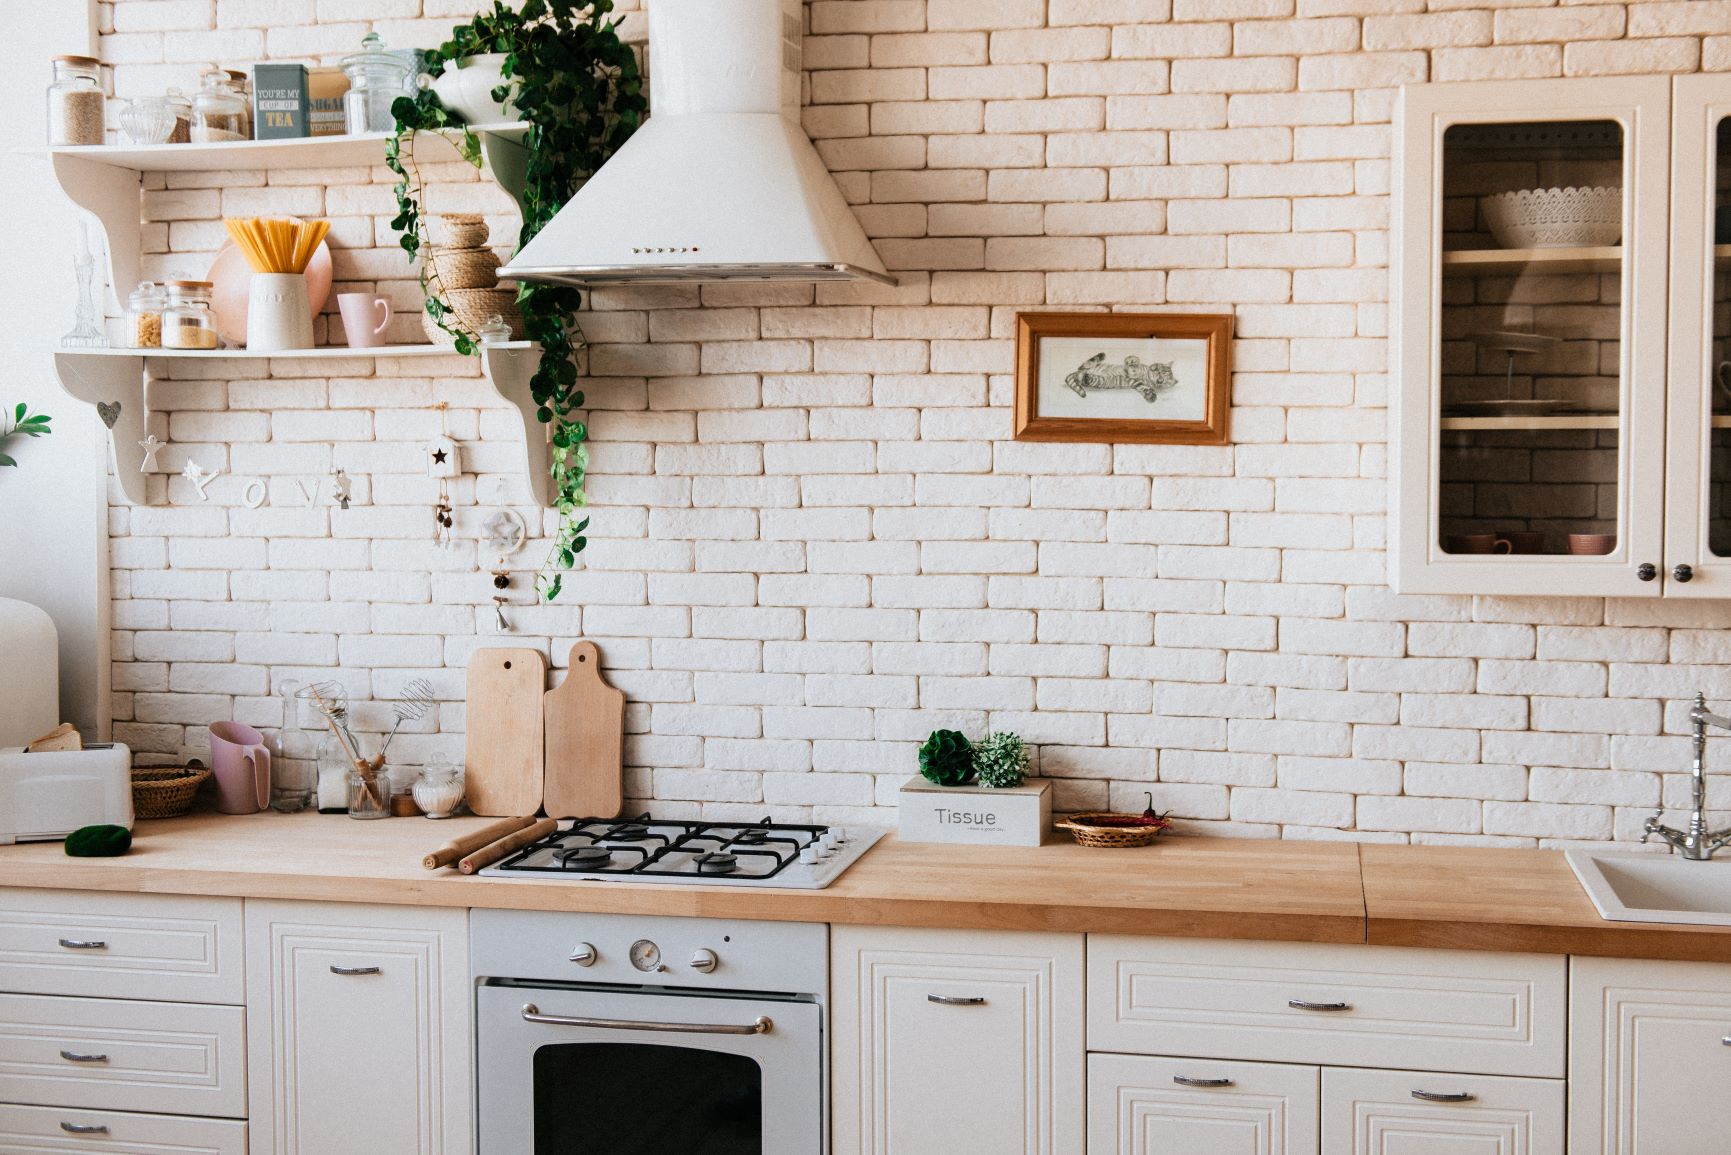 Ein Ausschnitt aus einer hellen Küche mit einer weißen Steinwand, vielen Gegenständen aus Naturmaterialien wie Holz und einer Pflanze